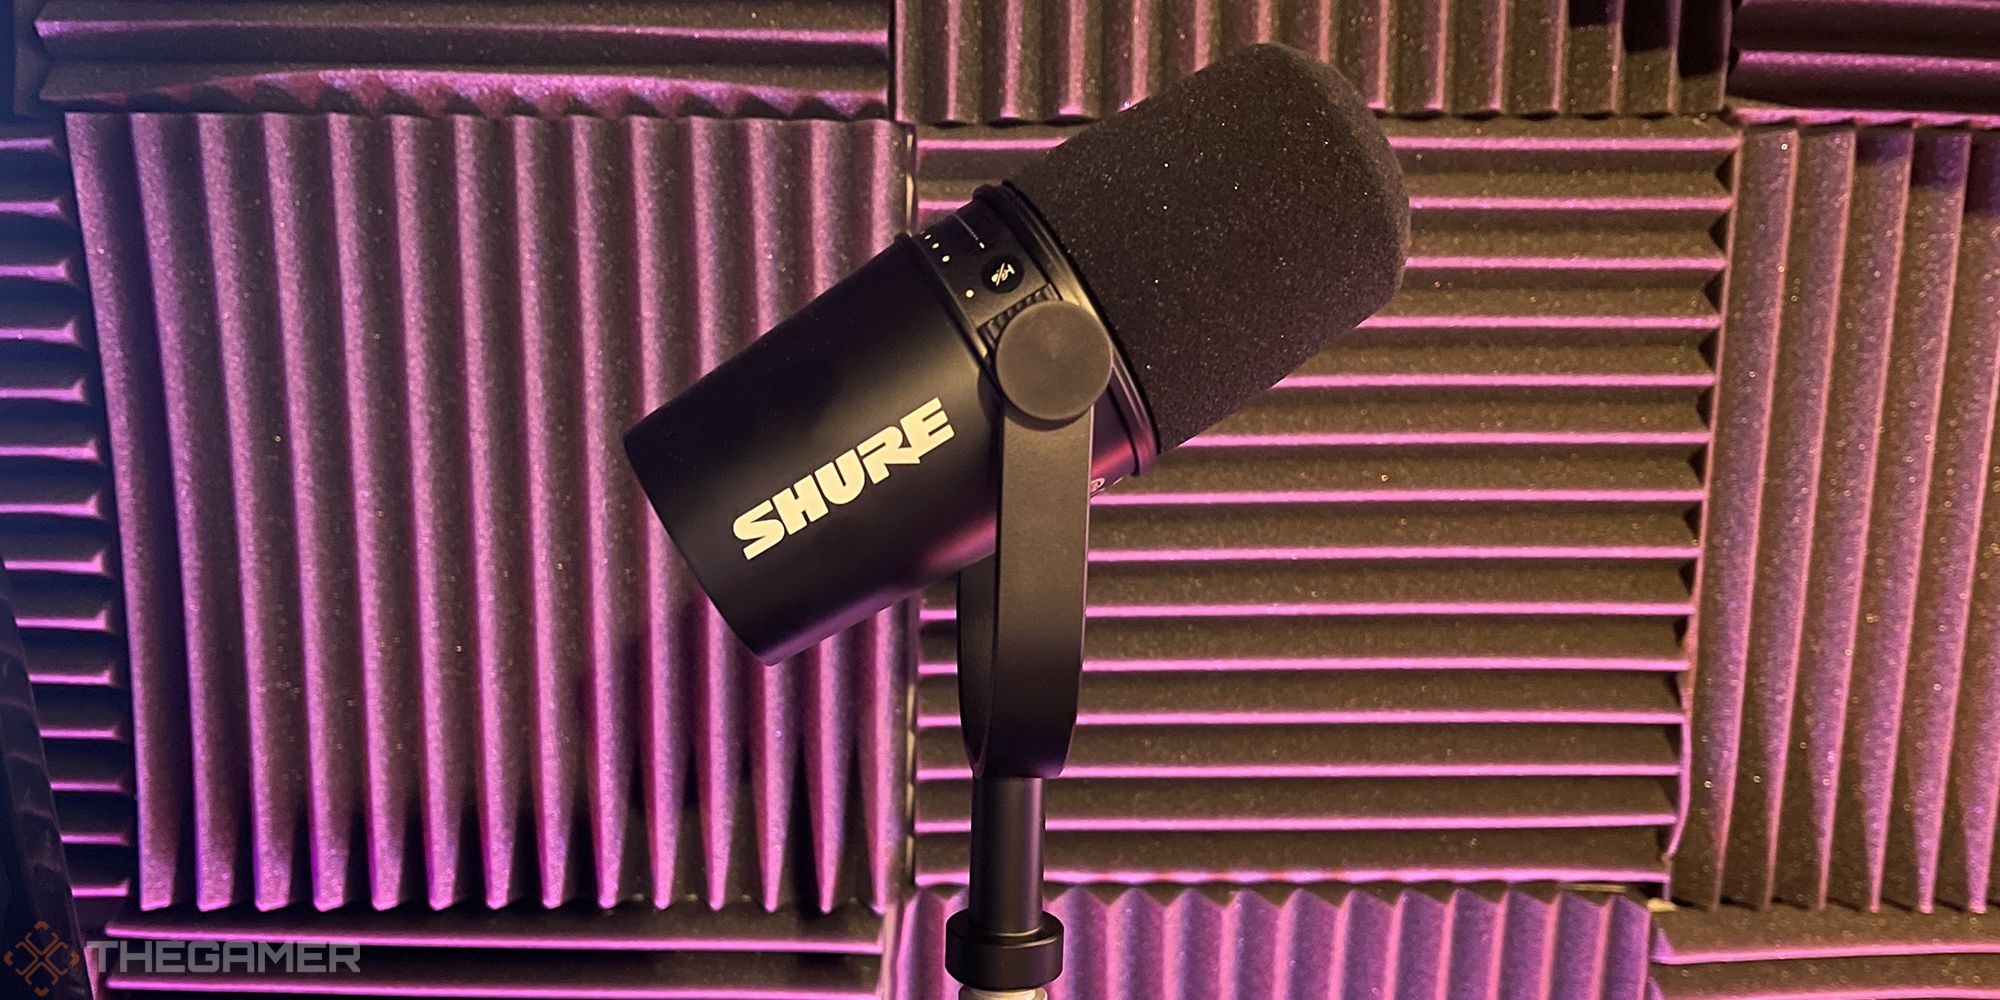 Shure MV7 Podcast Kit Review